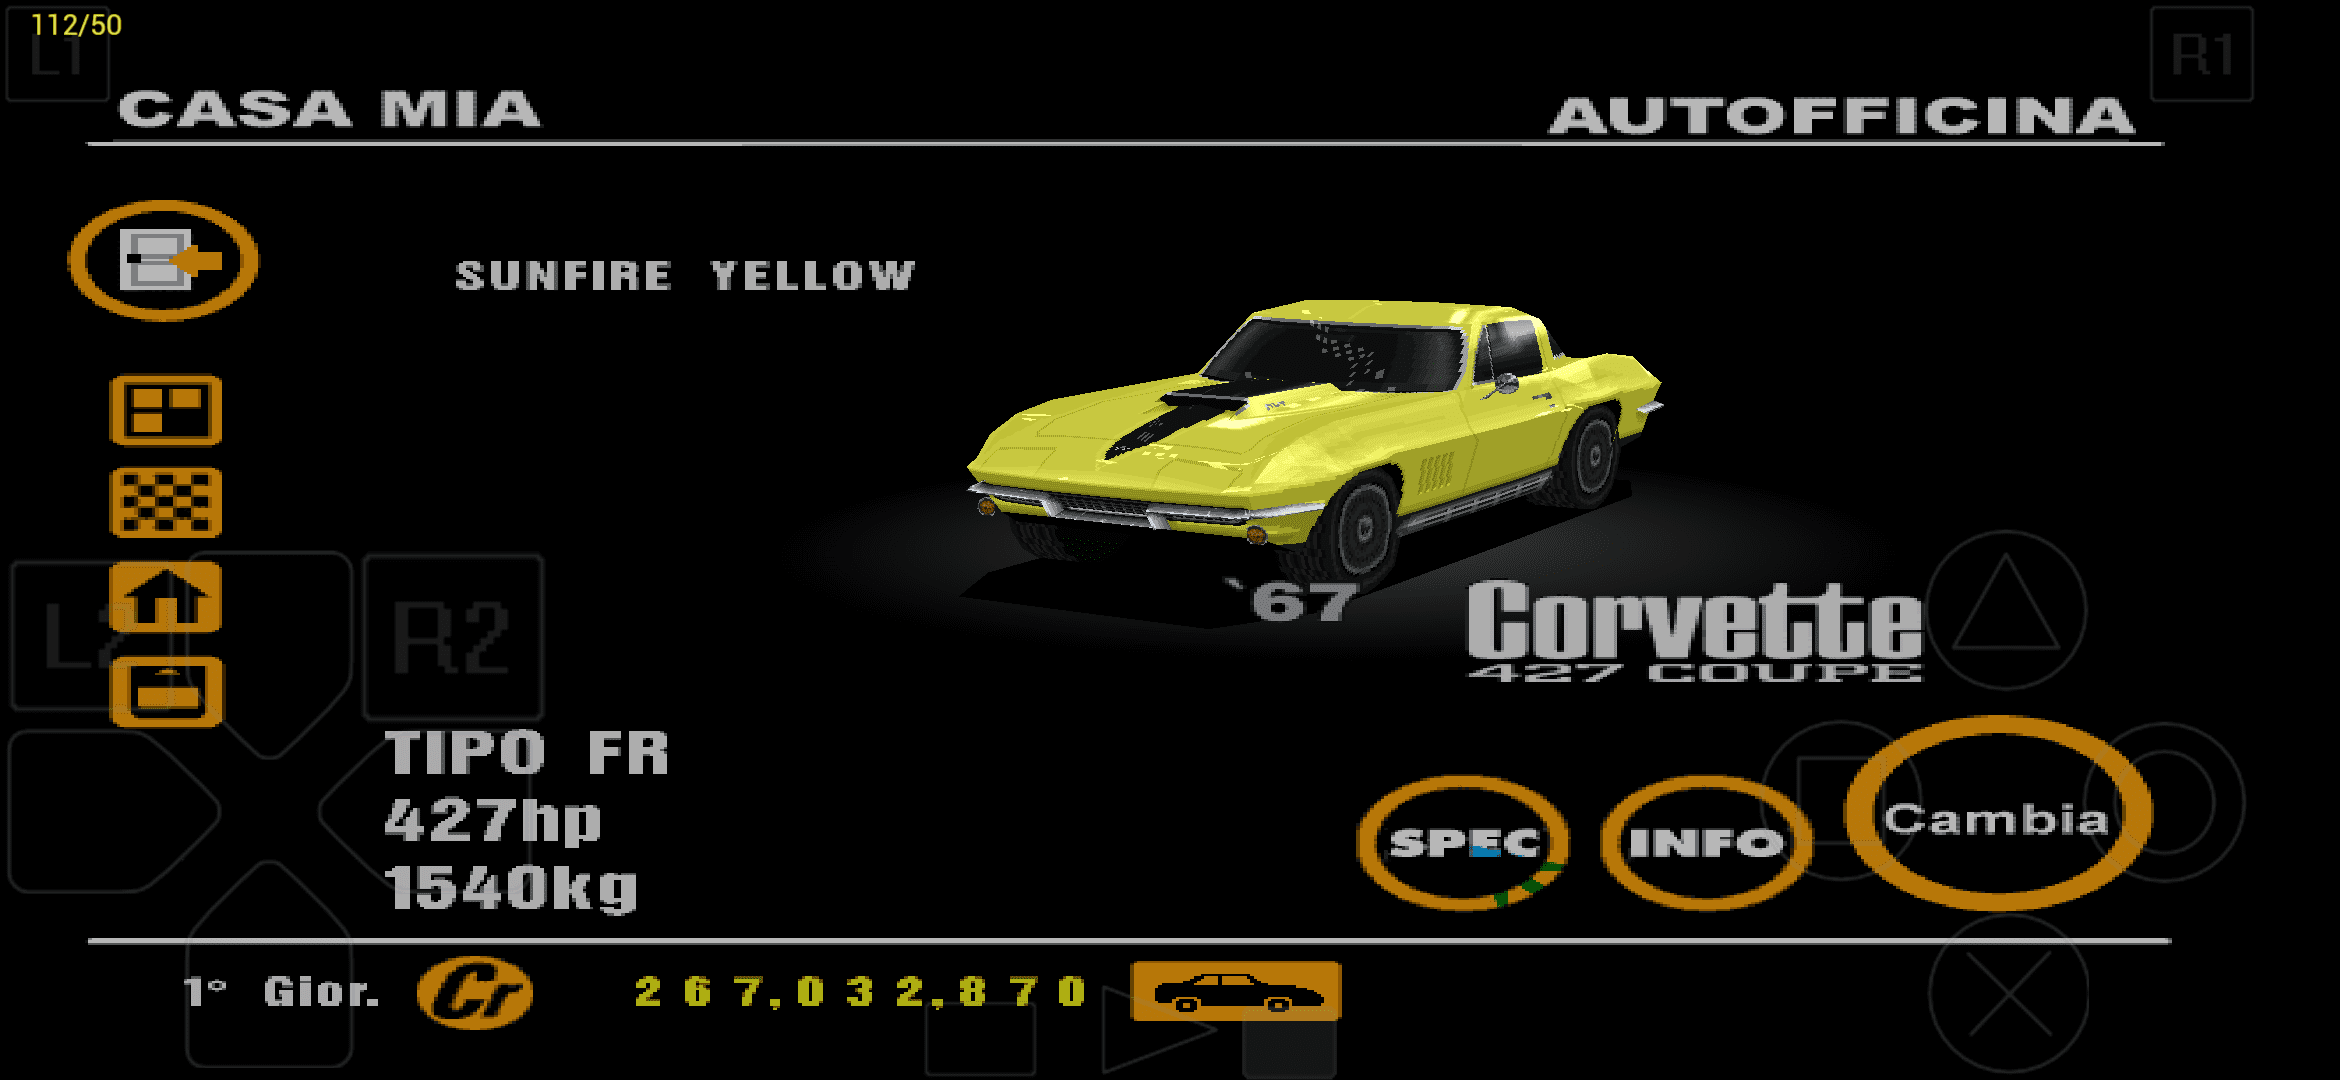 Chevrolet Corvette 427 Coupe '67 Sunfire Yellow